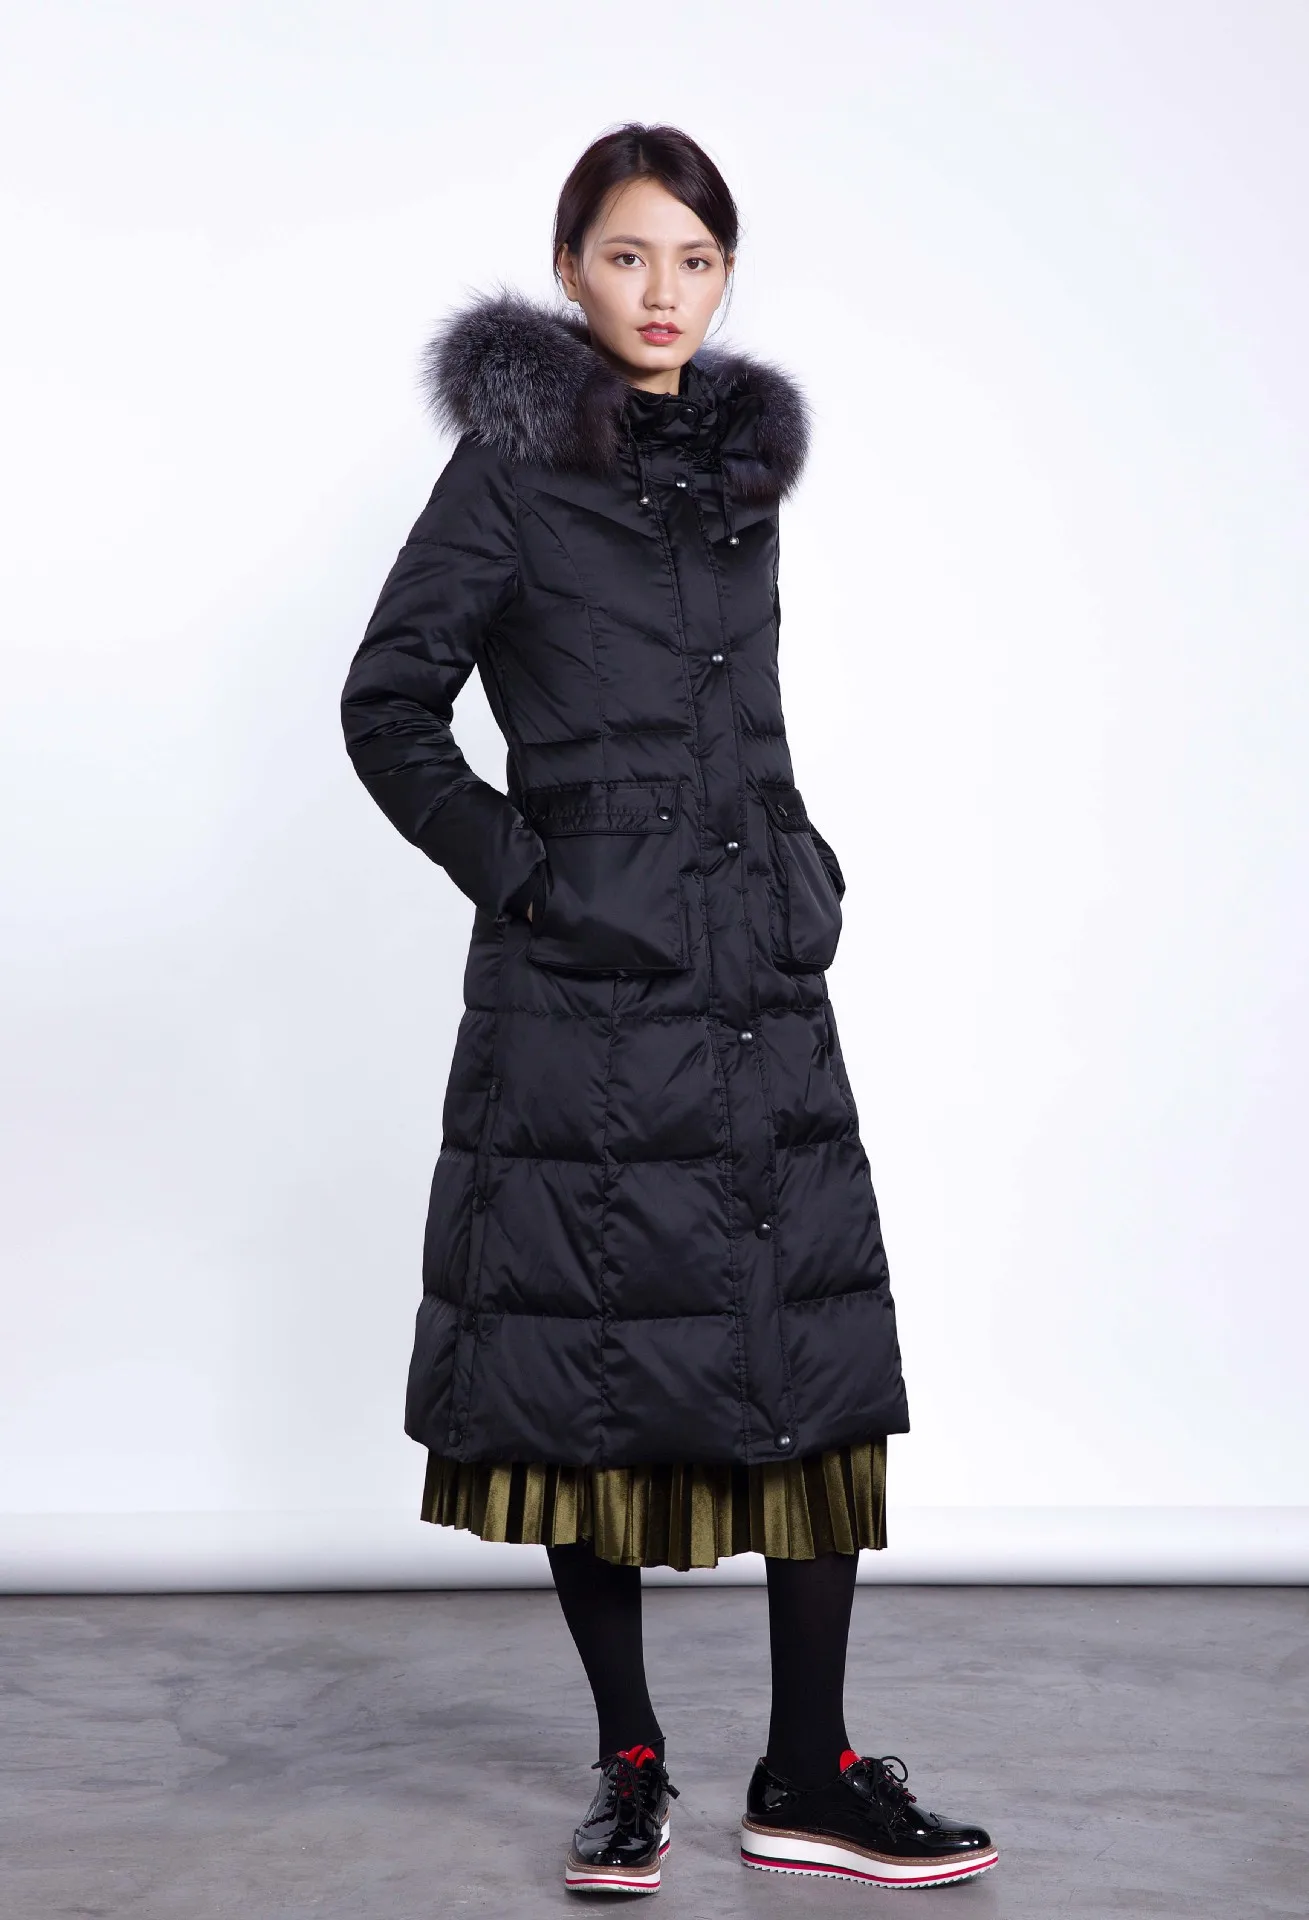 AYUNSUE/зимняя куртка для женщин с воротником из лисьего меха; пуховик высокого качества; очень длинное пальто-парка; Chaquetas Invierno Mujer KJ603